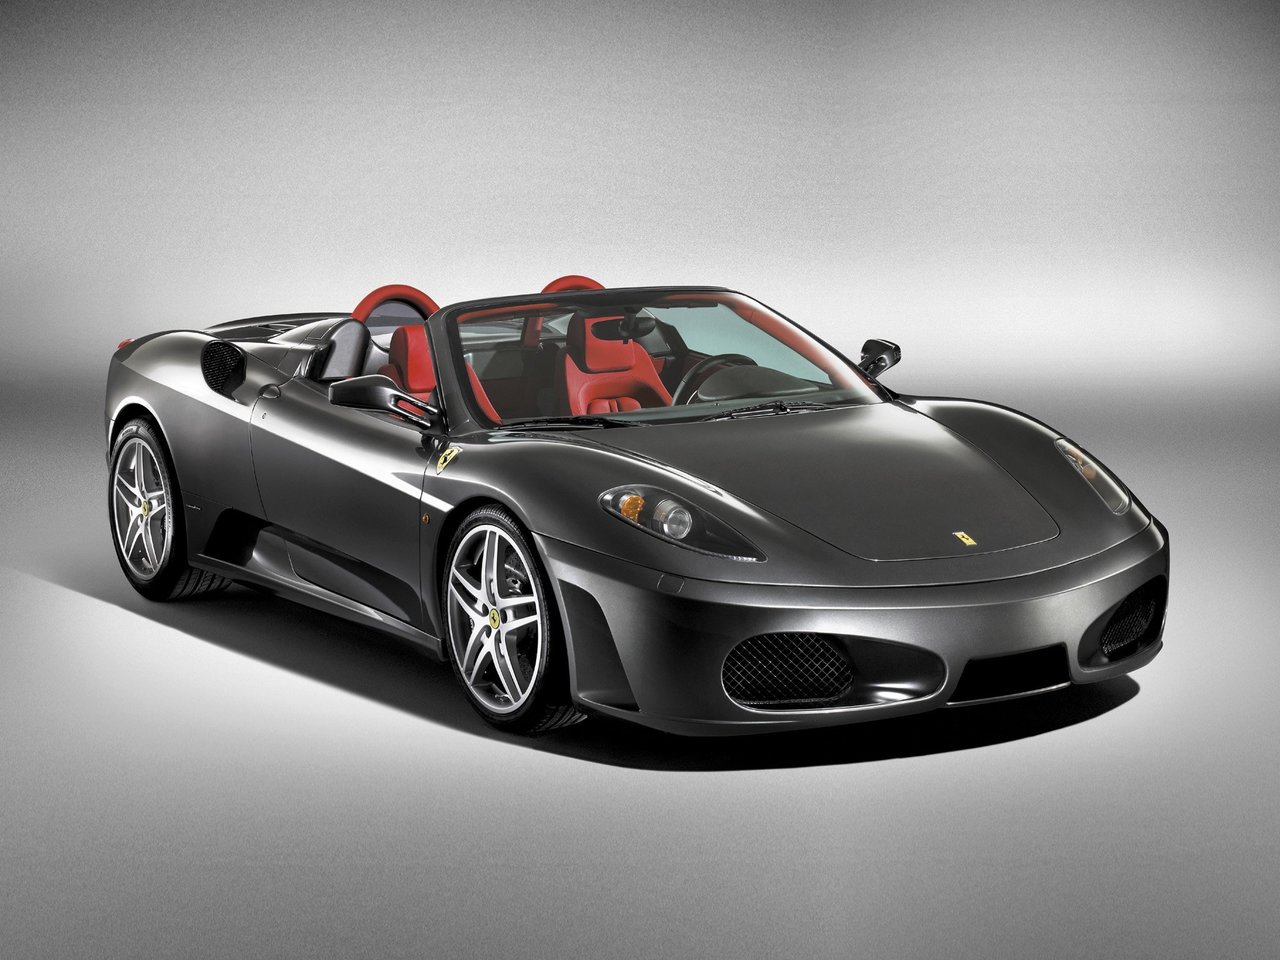 Расход газа одной комплектации кабриолета Spider Ferrari F430. Разница стоимости заправки газом и бензином. Автономный пробег до и после установки ГБО.